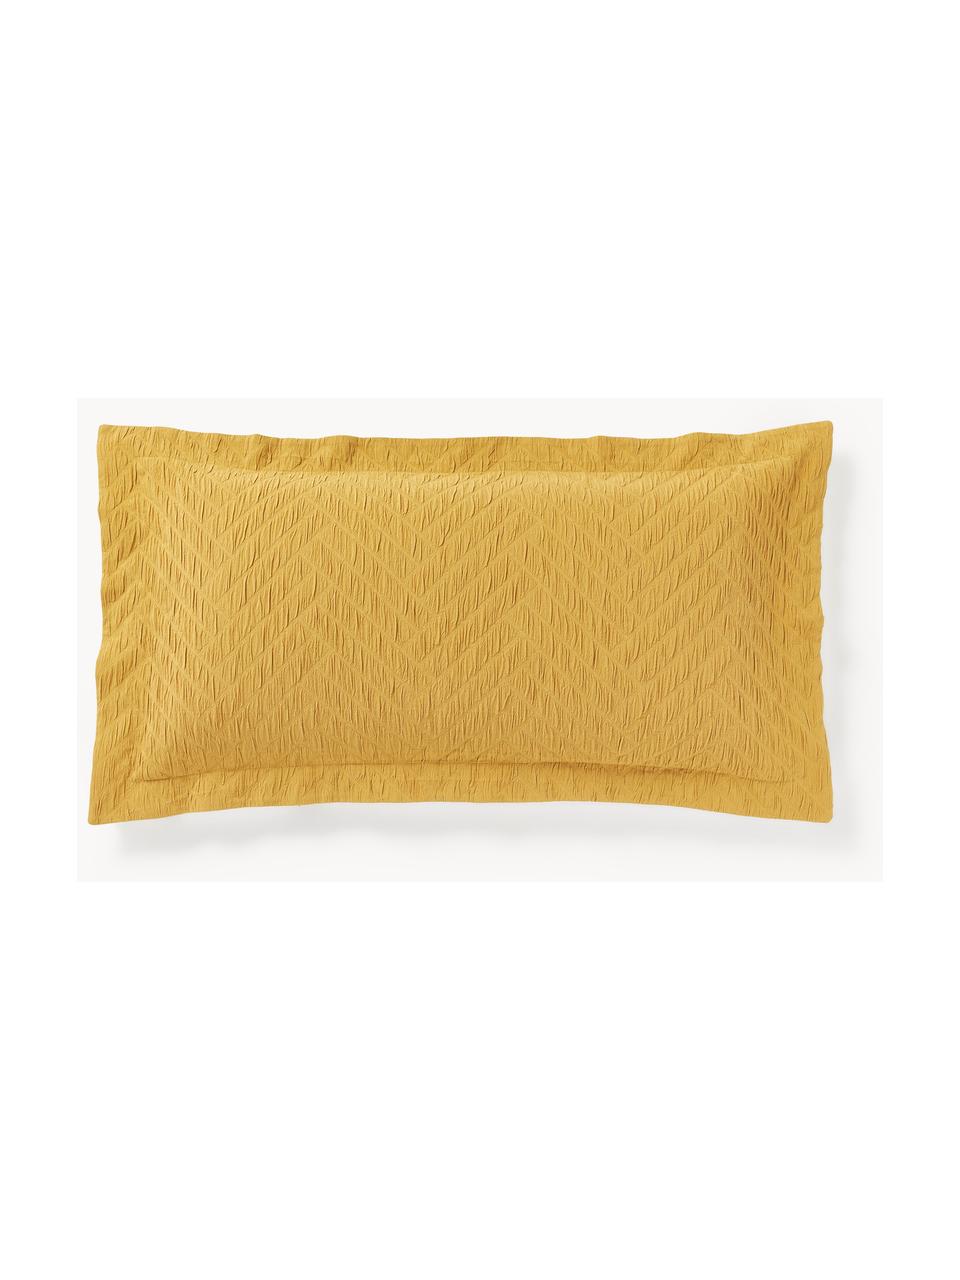 Poszewka na poduszkę z bawełny z lamówką Jonie, Musztardowy, S 40 x D 80 cm